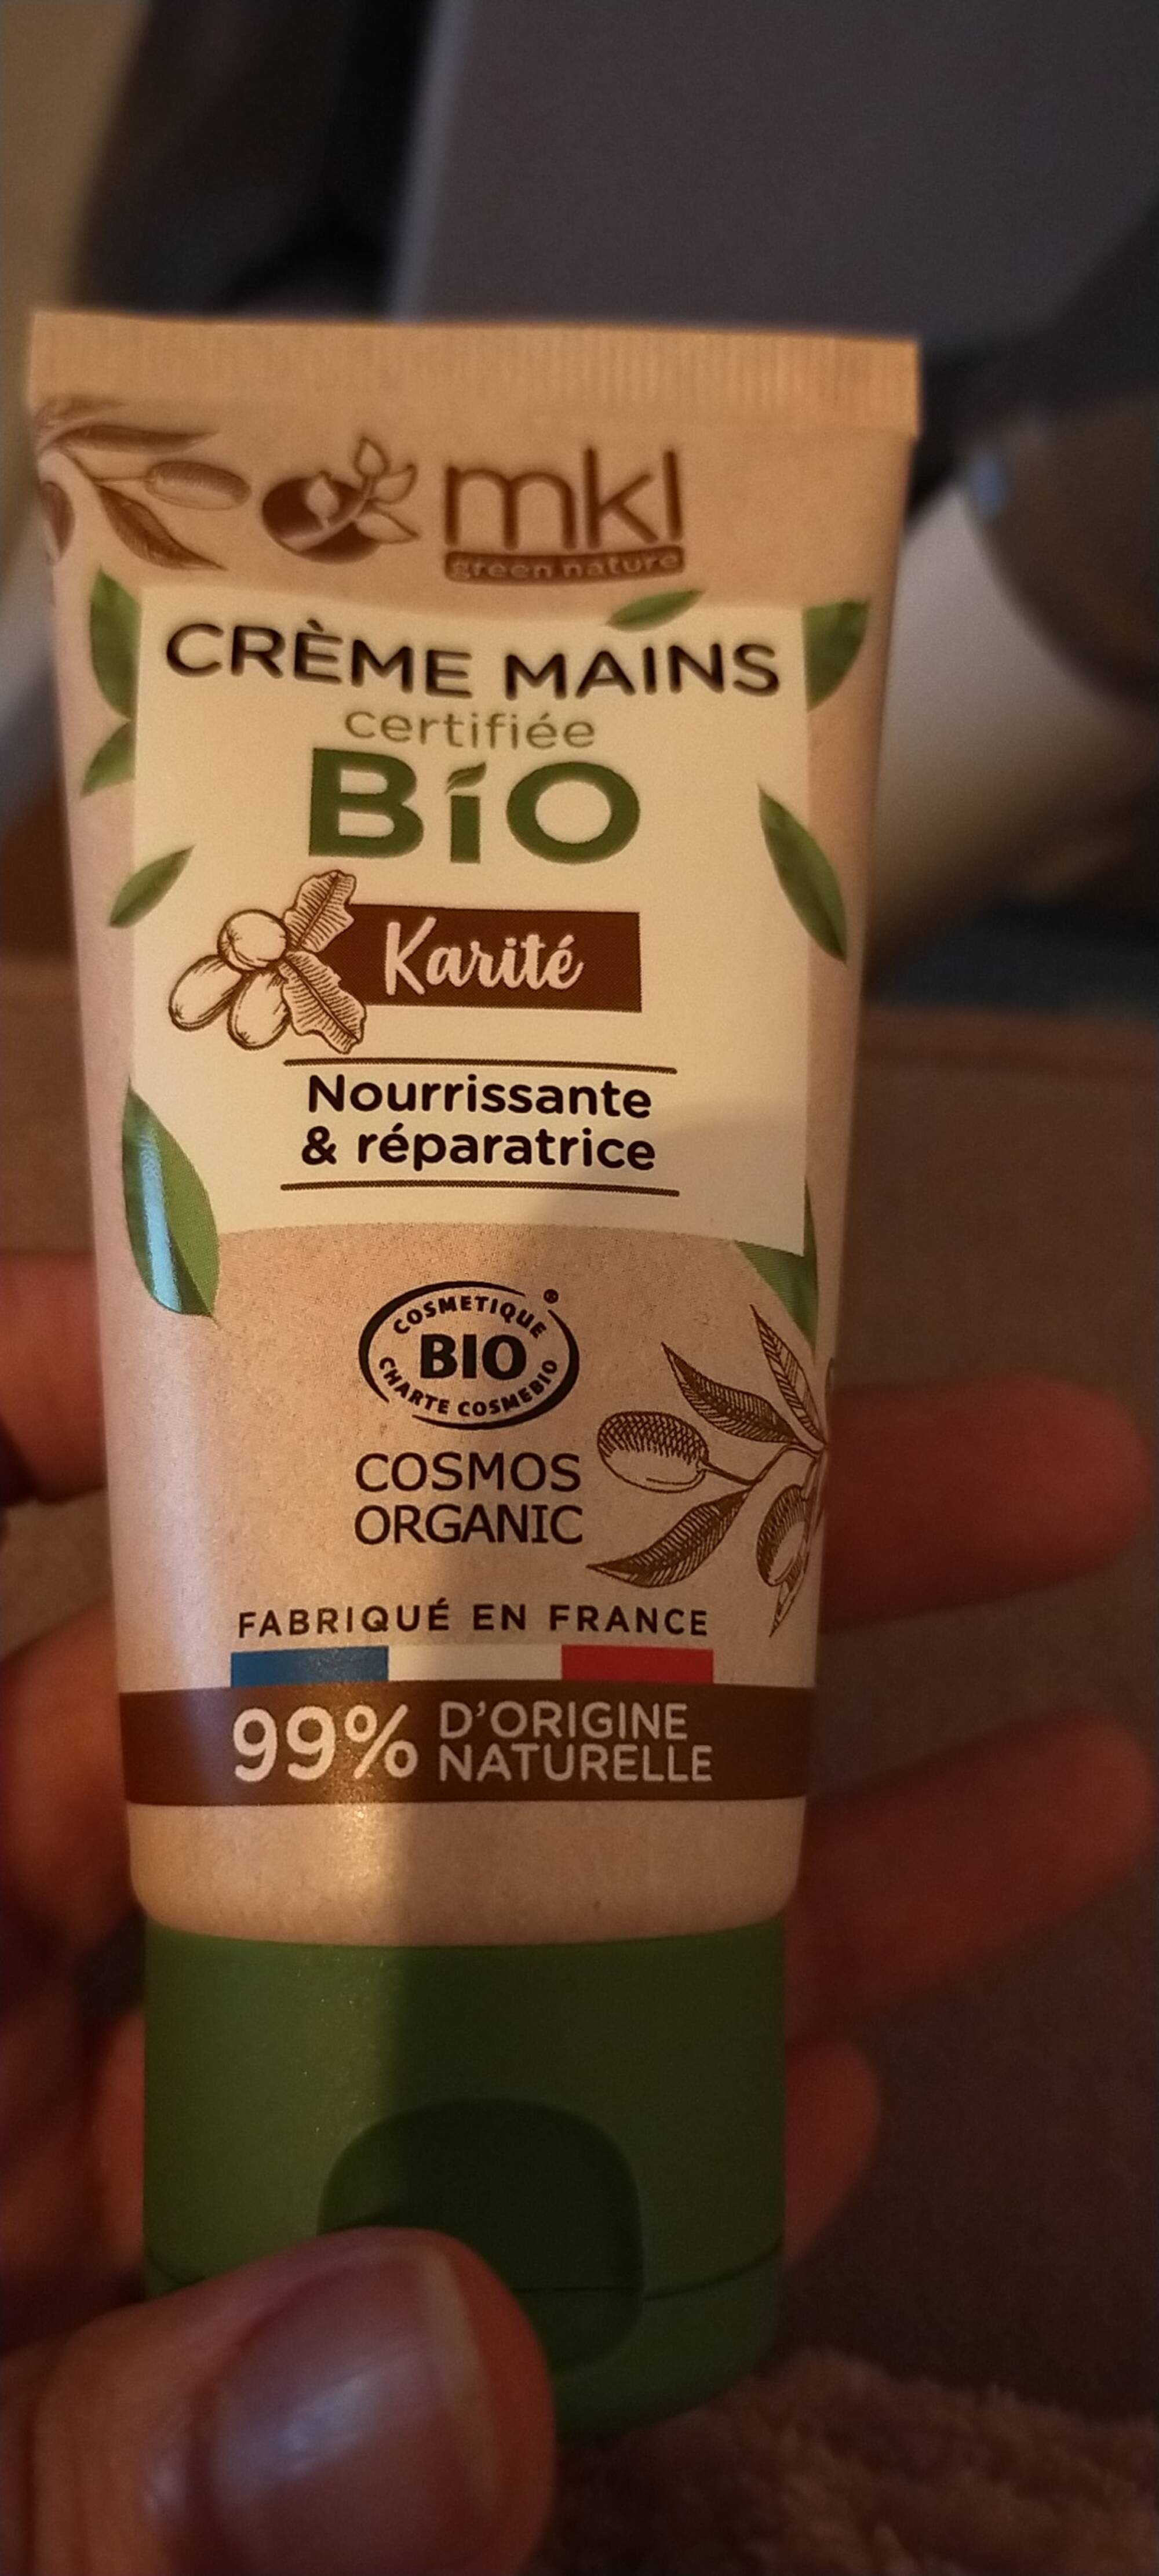 MKL GREEN NATURE - Crème mains Bio au karité